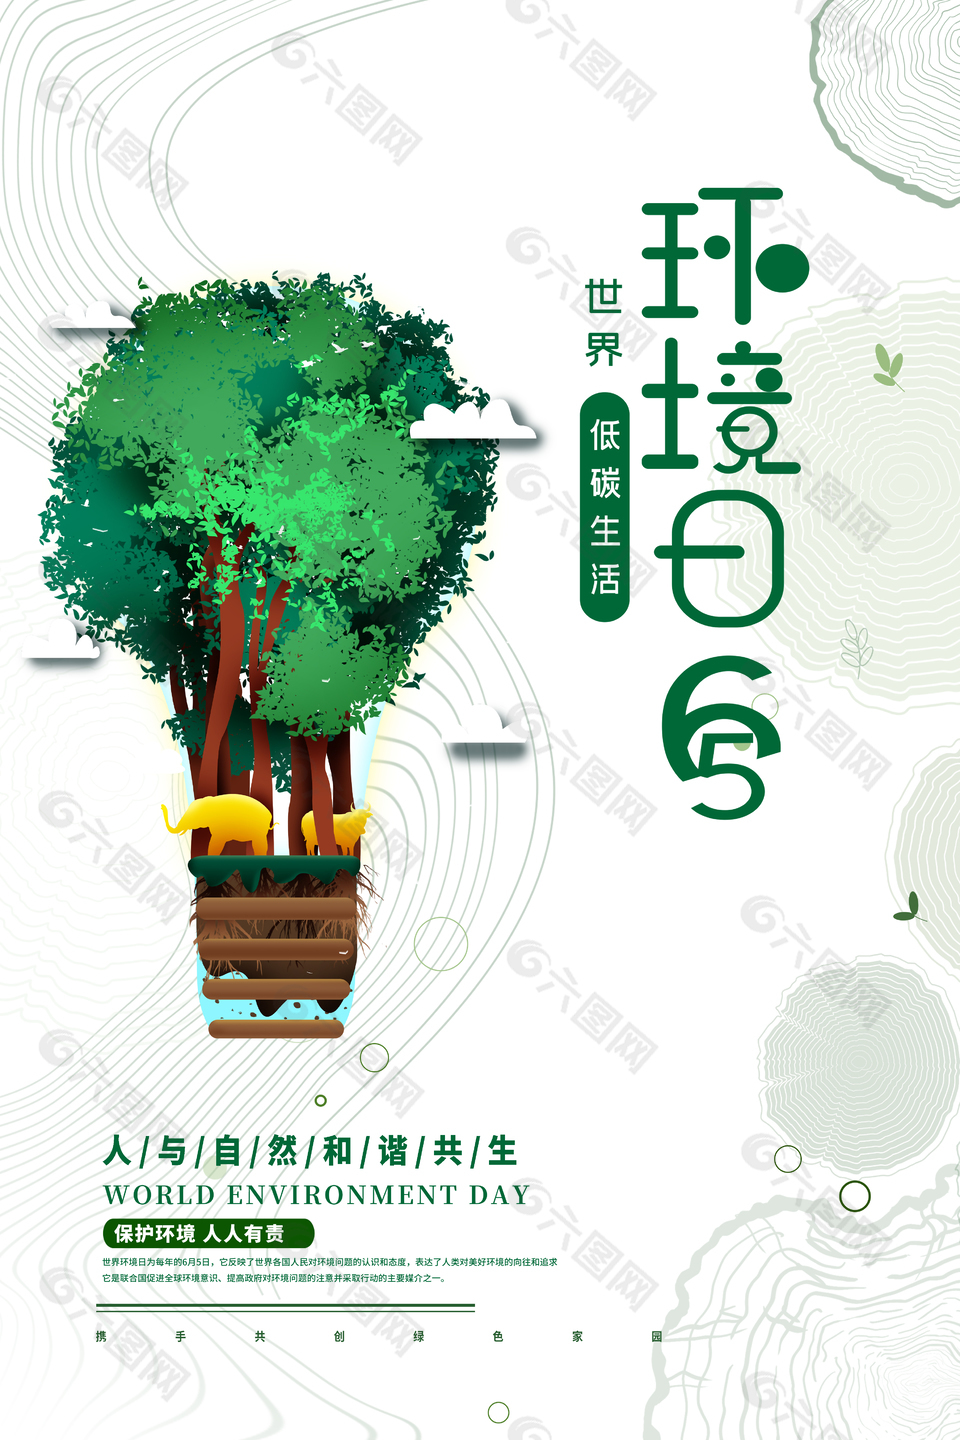 保护环境低碳生活环境日主题海报